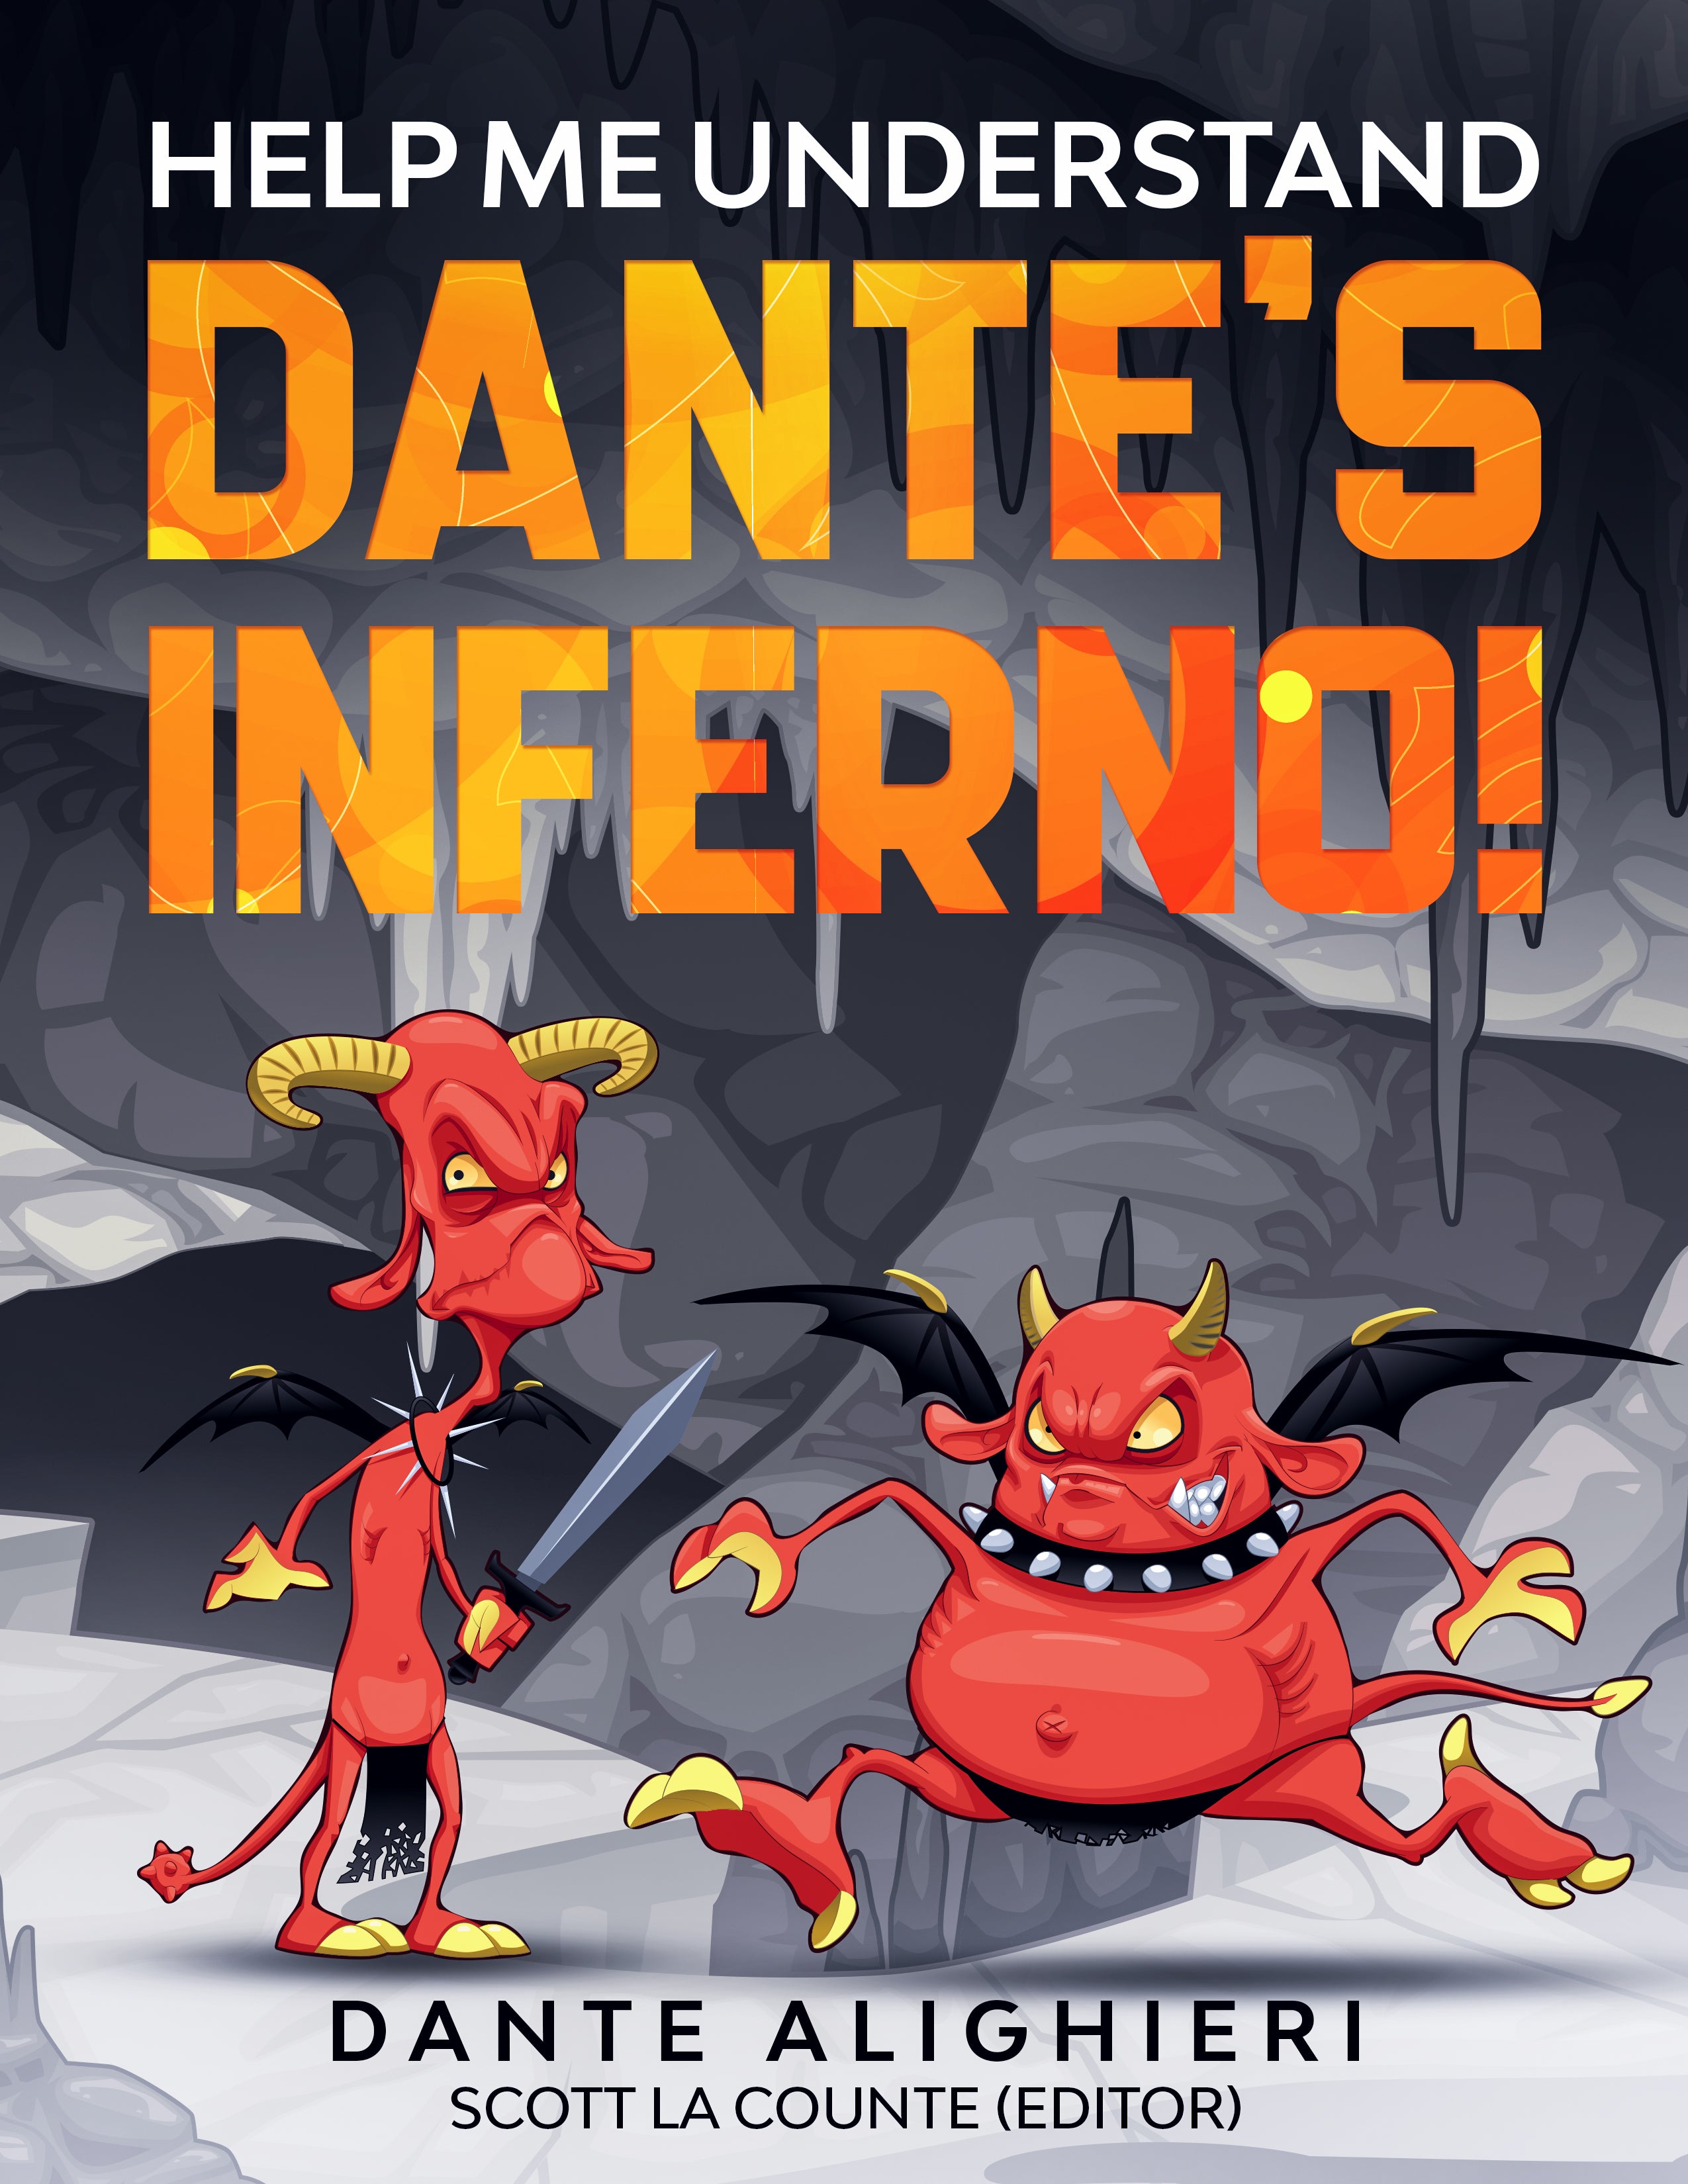 Dante nos leva ao Inferno